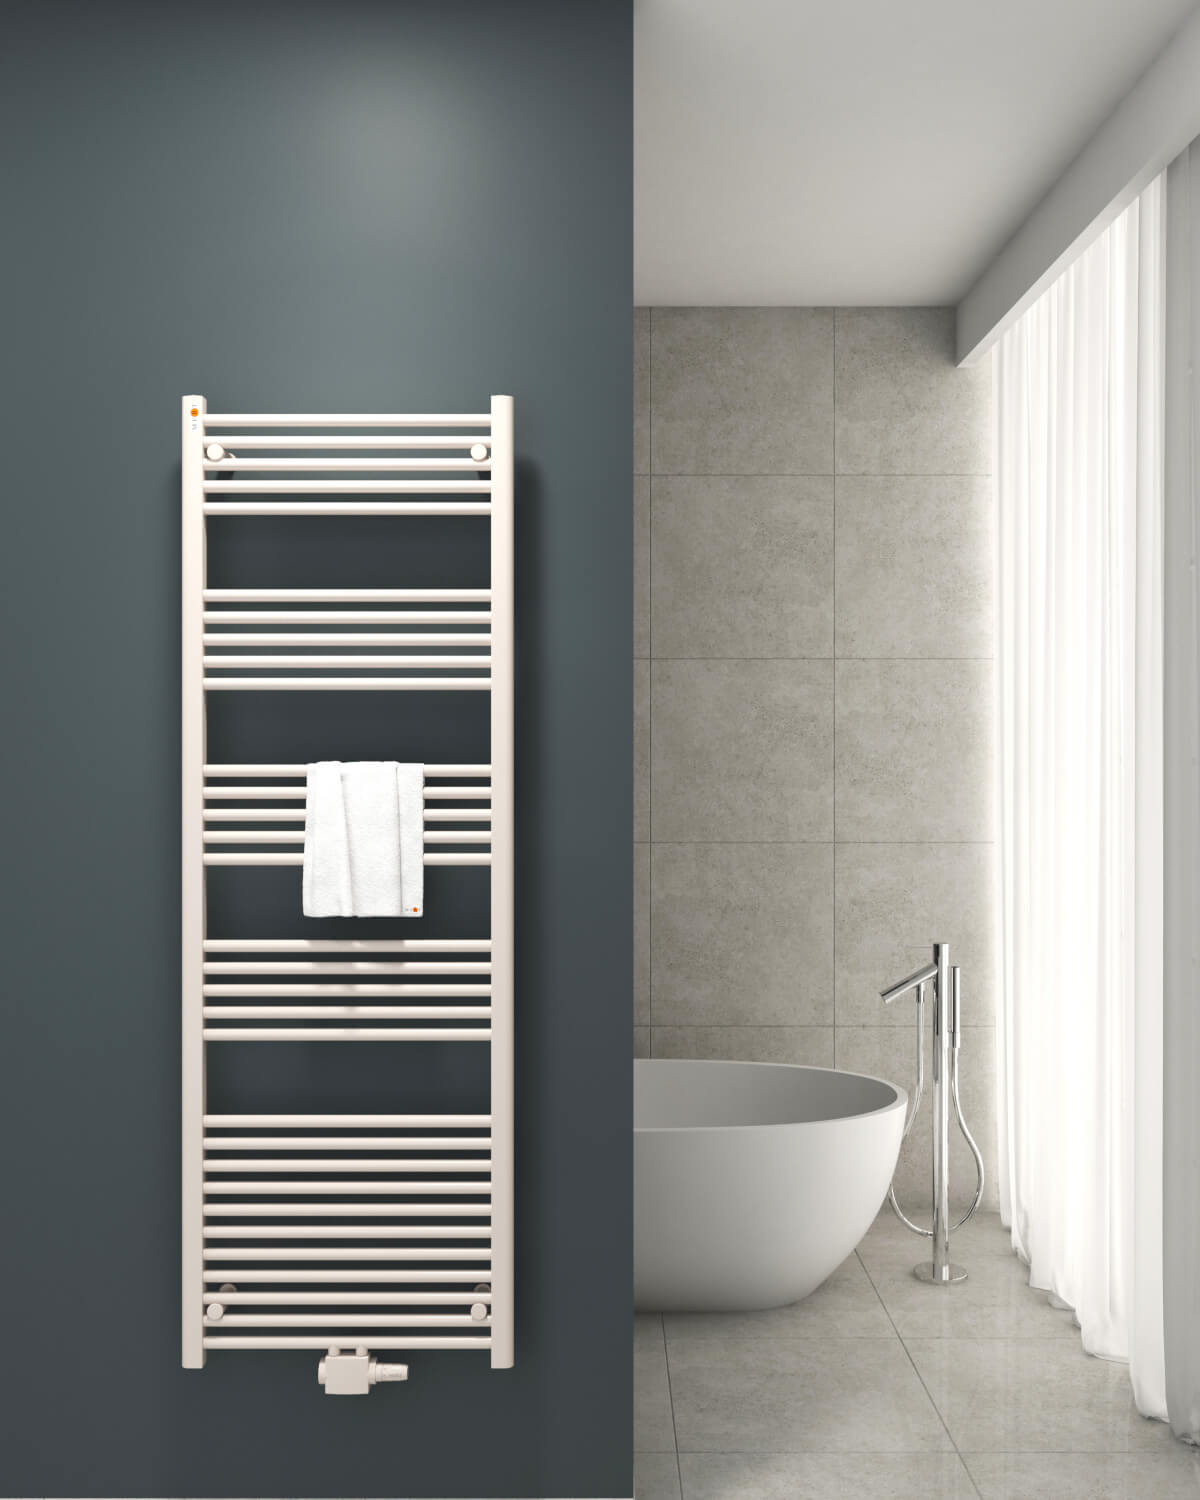 Home Perfect Badheizkörper auf grauer Badezimmerwand montiert